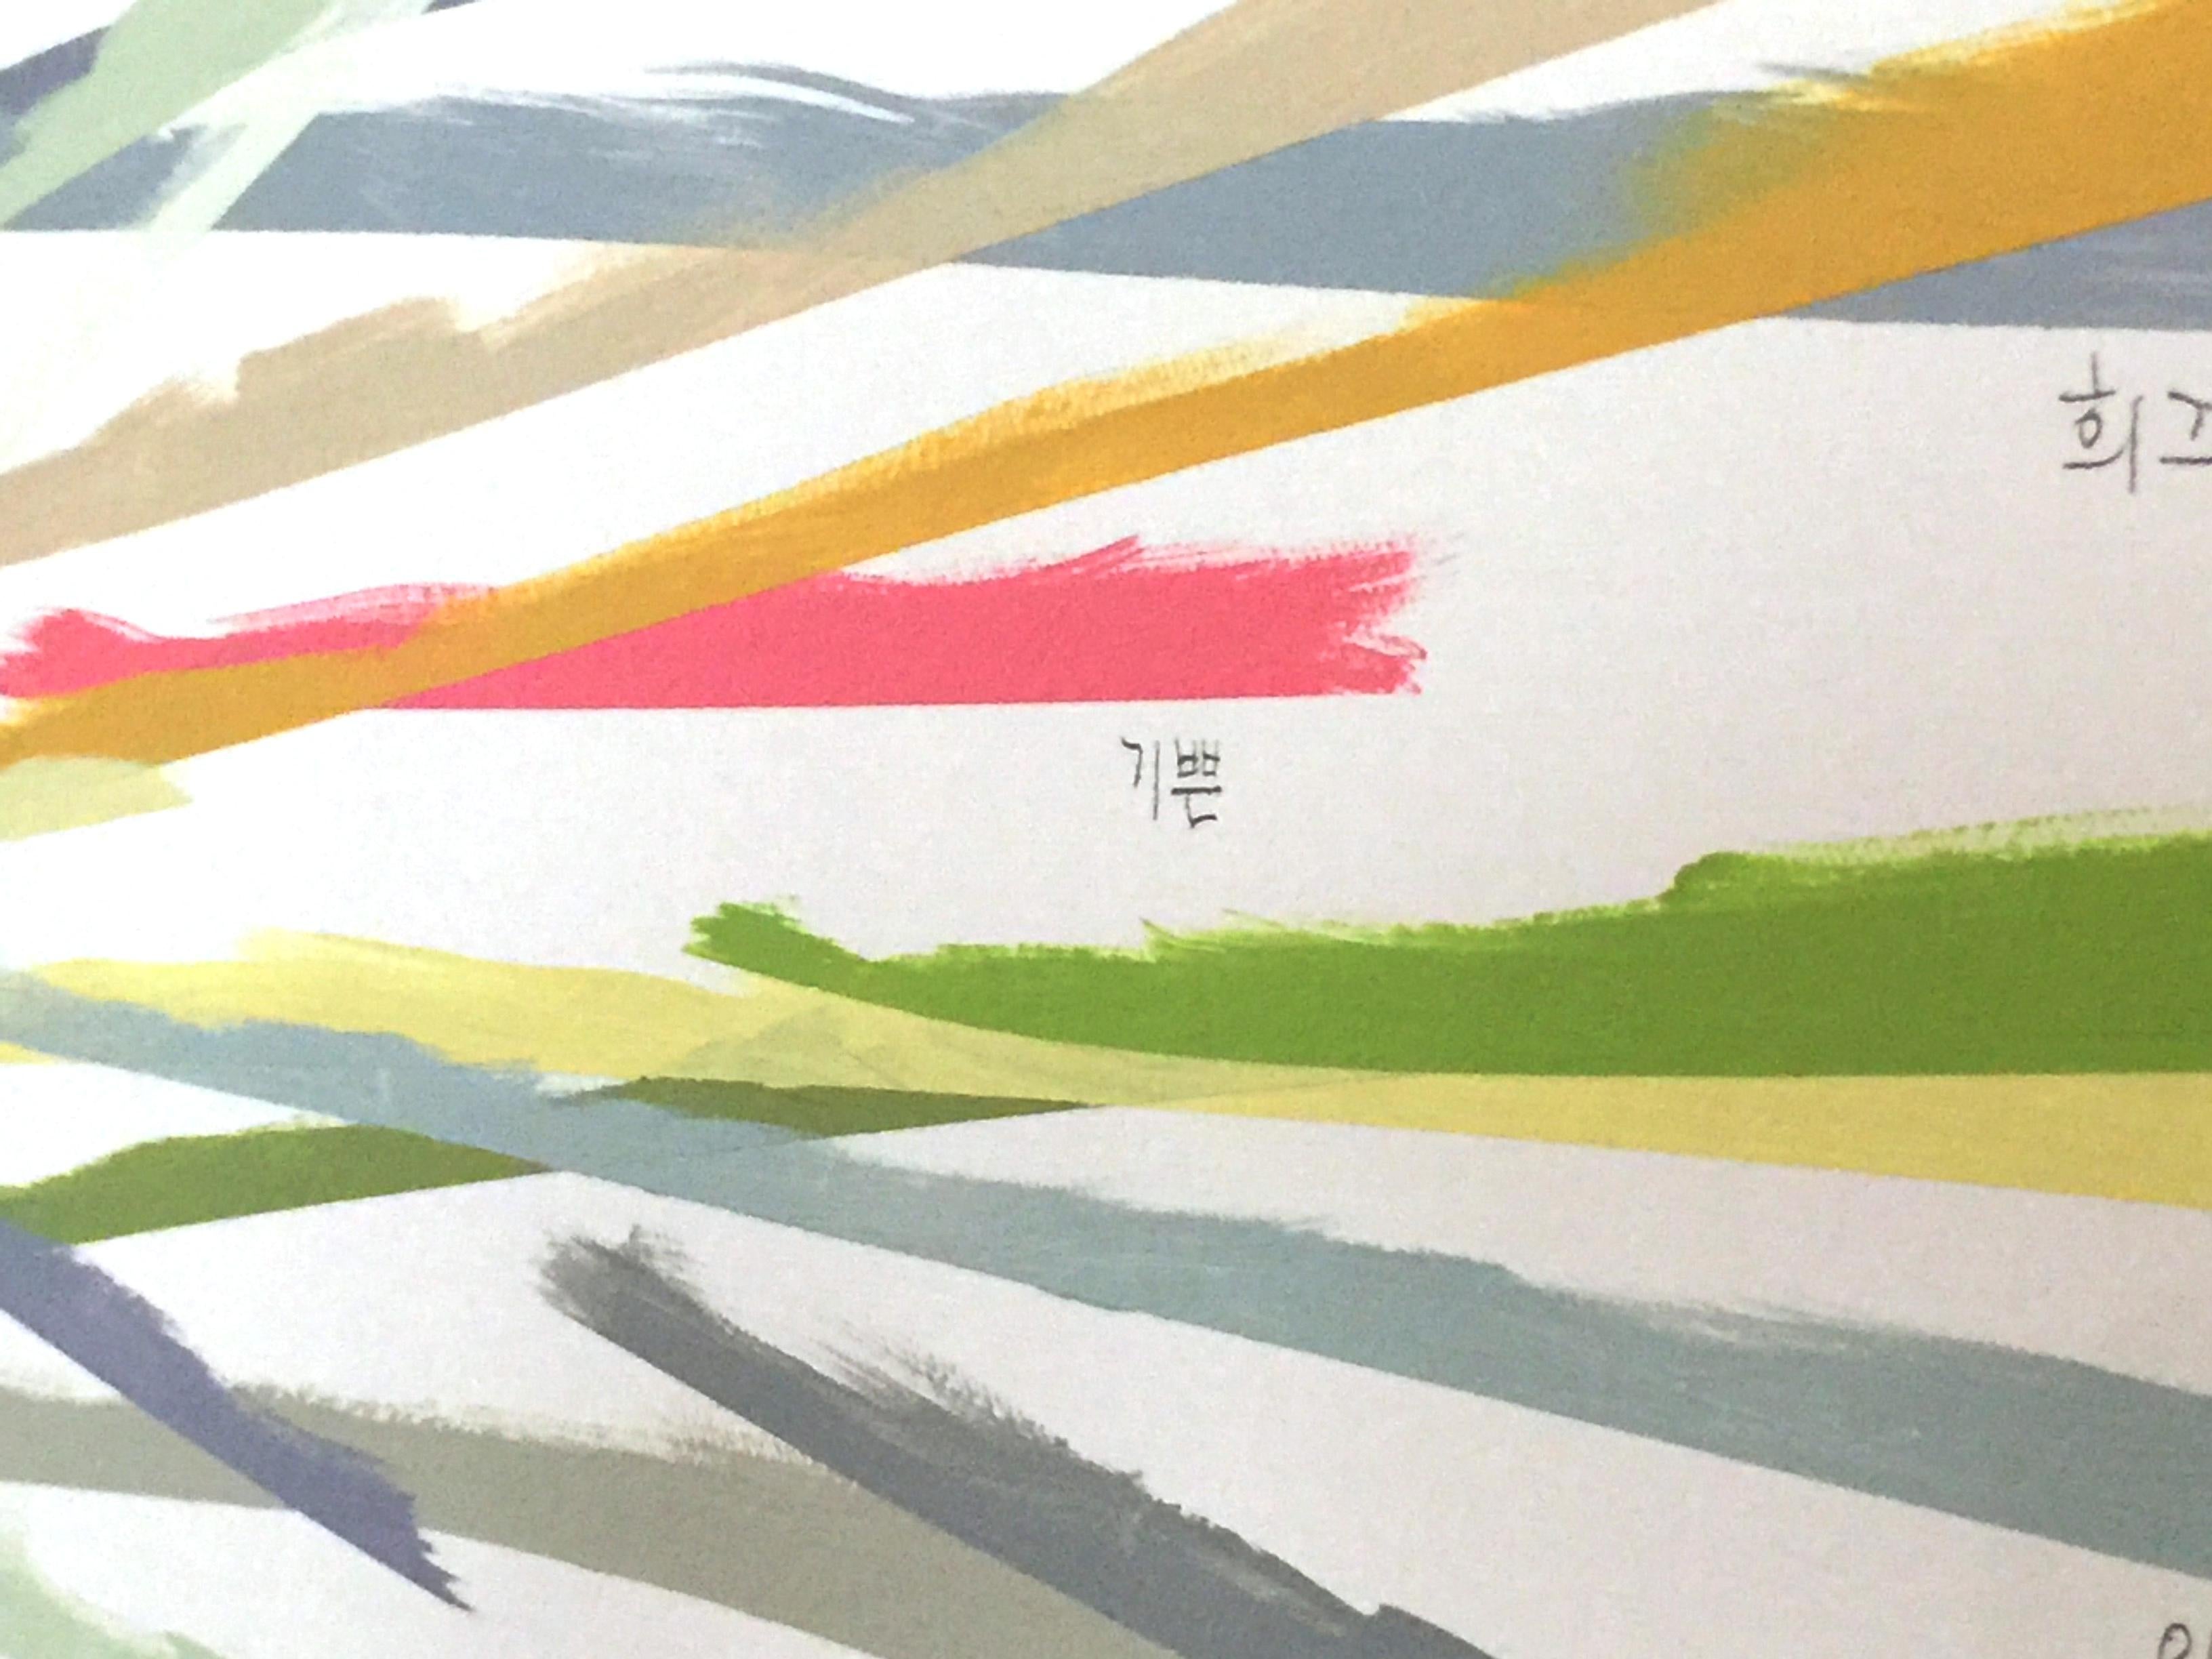 Abstrakte Notiz 001 (Abstraktes Gemälde)

Bleistift und Acryl auf Leinwand - ungerahmt.

Dieses Kunstwerk ist inspiriert von der Serie Color as Adjective, einer Reihe von Zeichnungen und Gemälden, die fragmentierte Bilder, Erinnerungen und Gedanken